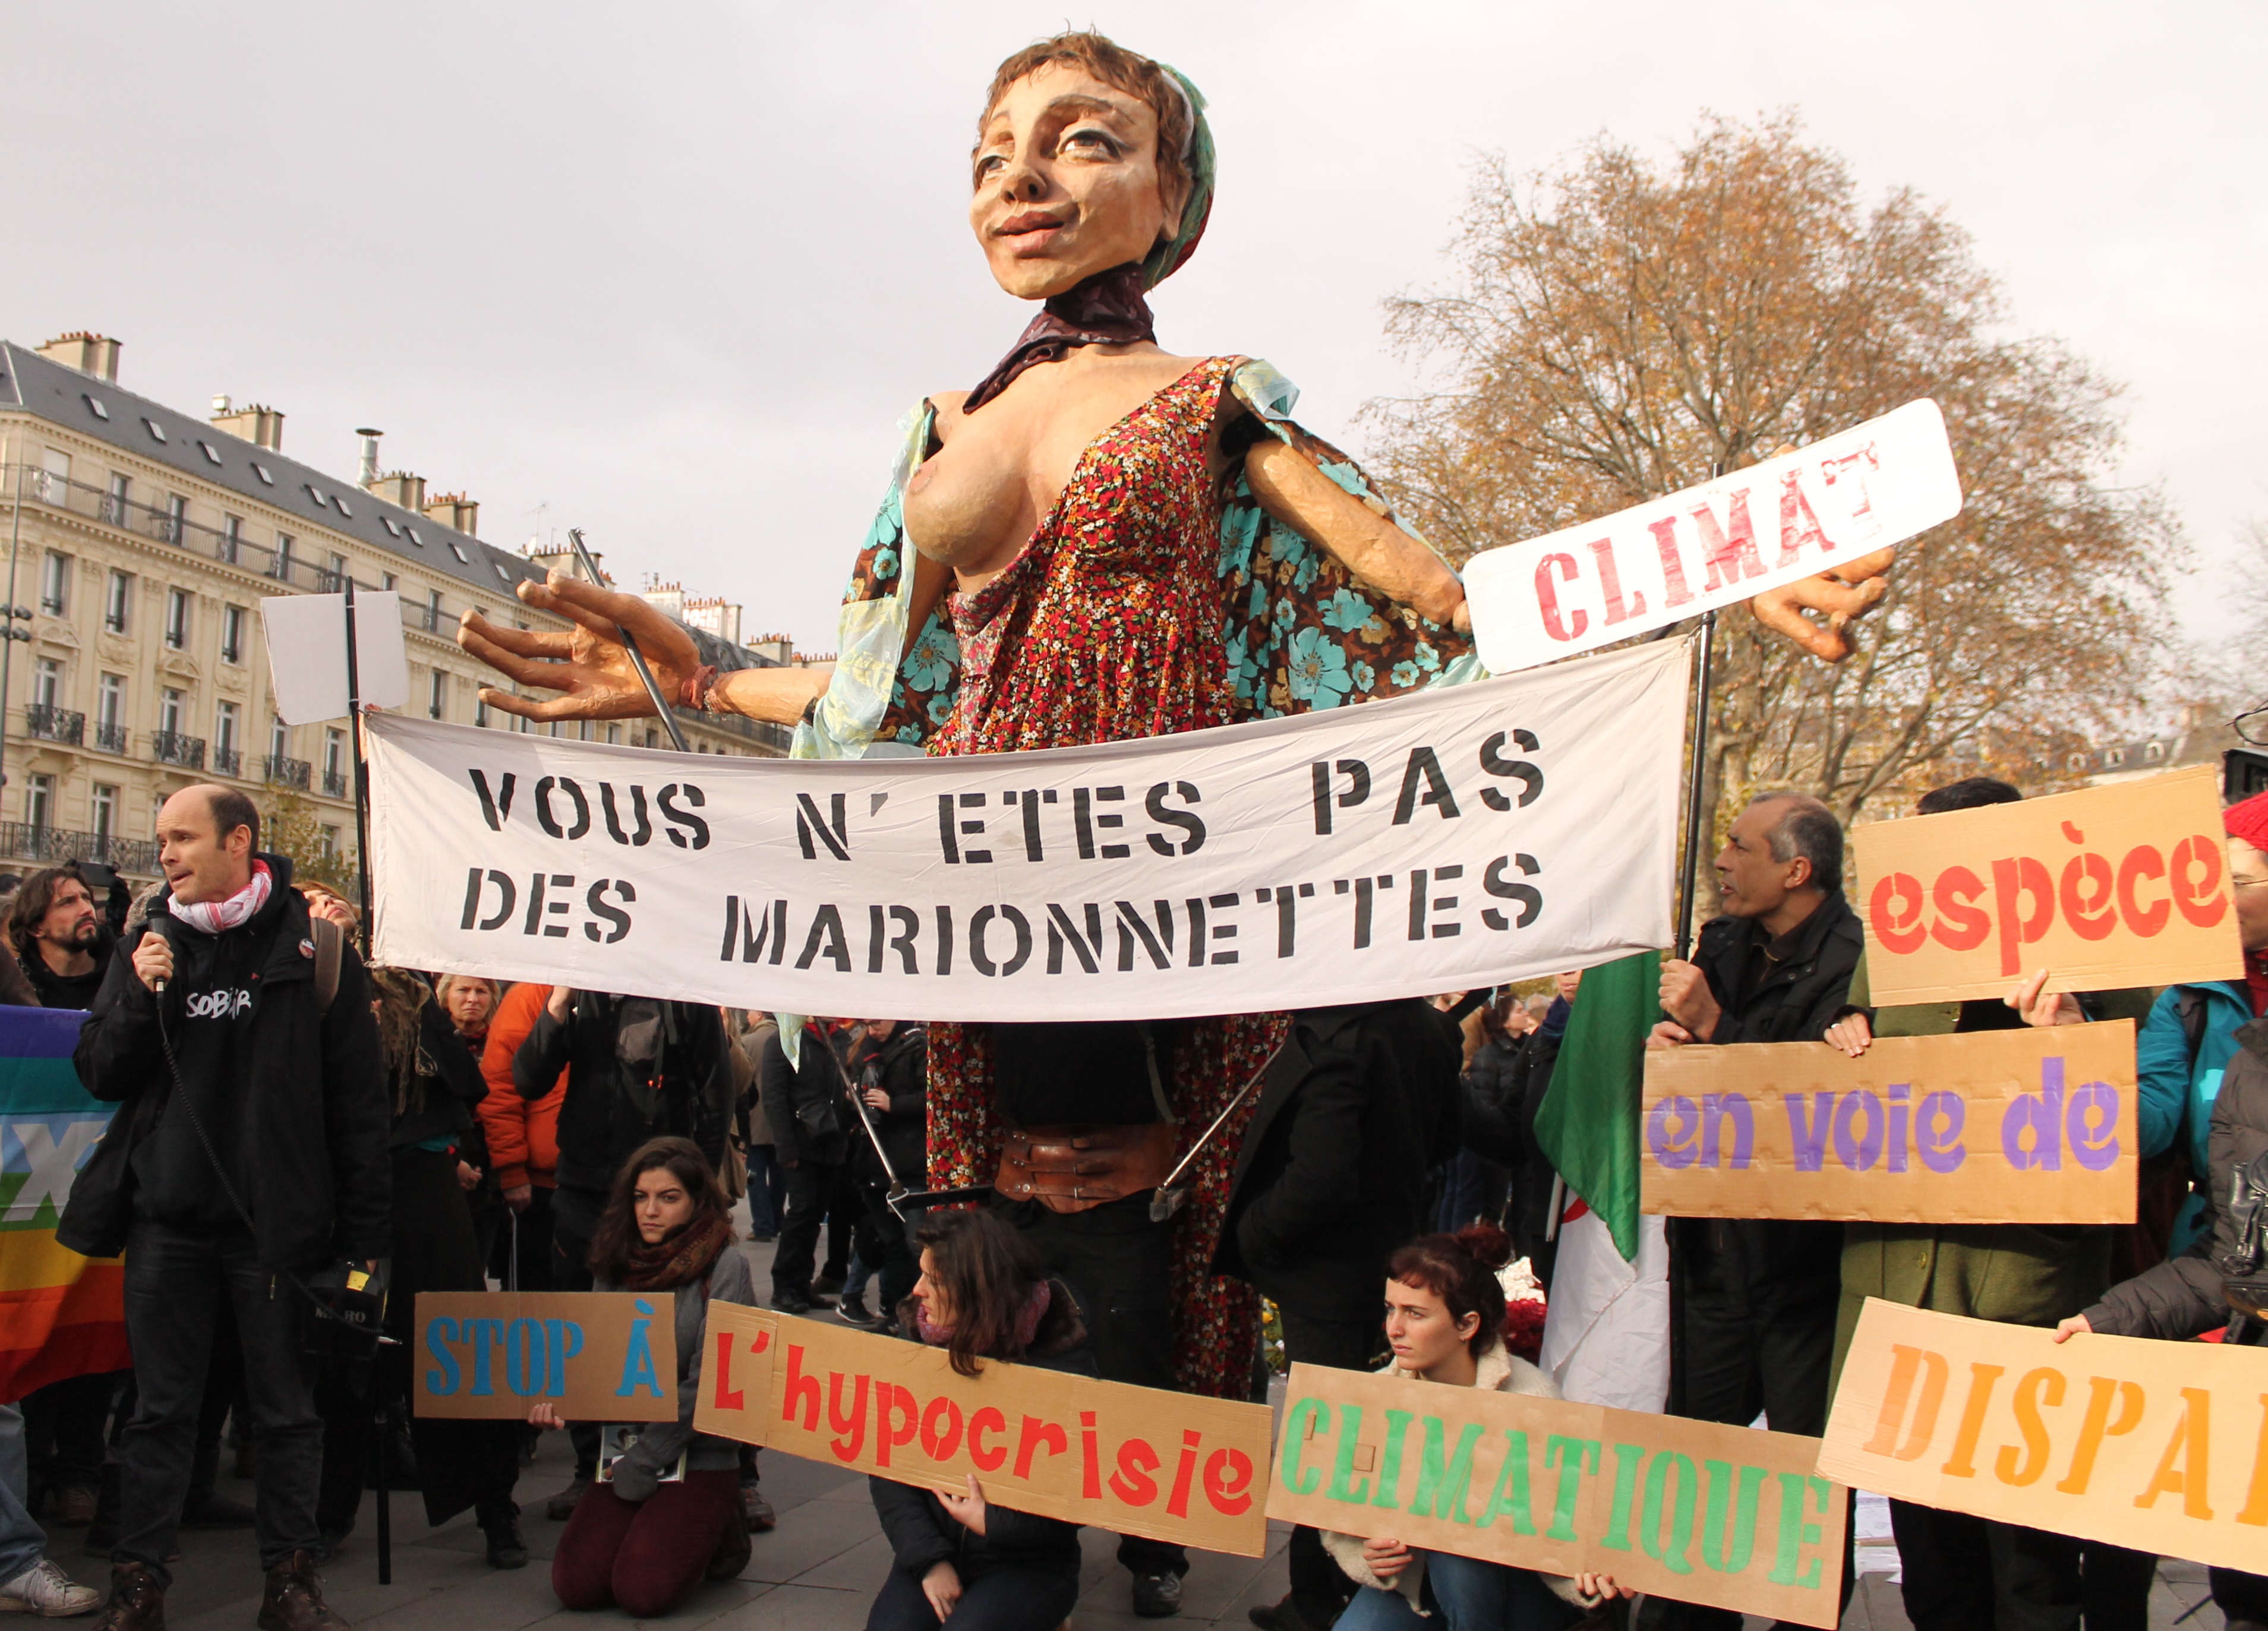 Los movimientos sociales en París se niegan ser daños colaterales a las medidas de seguridad